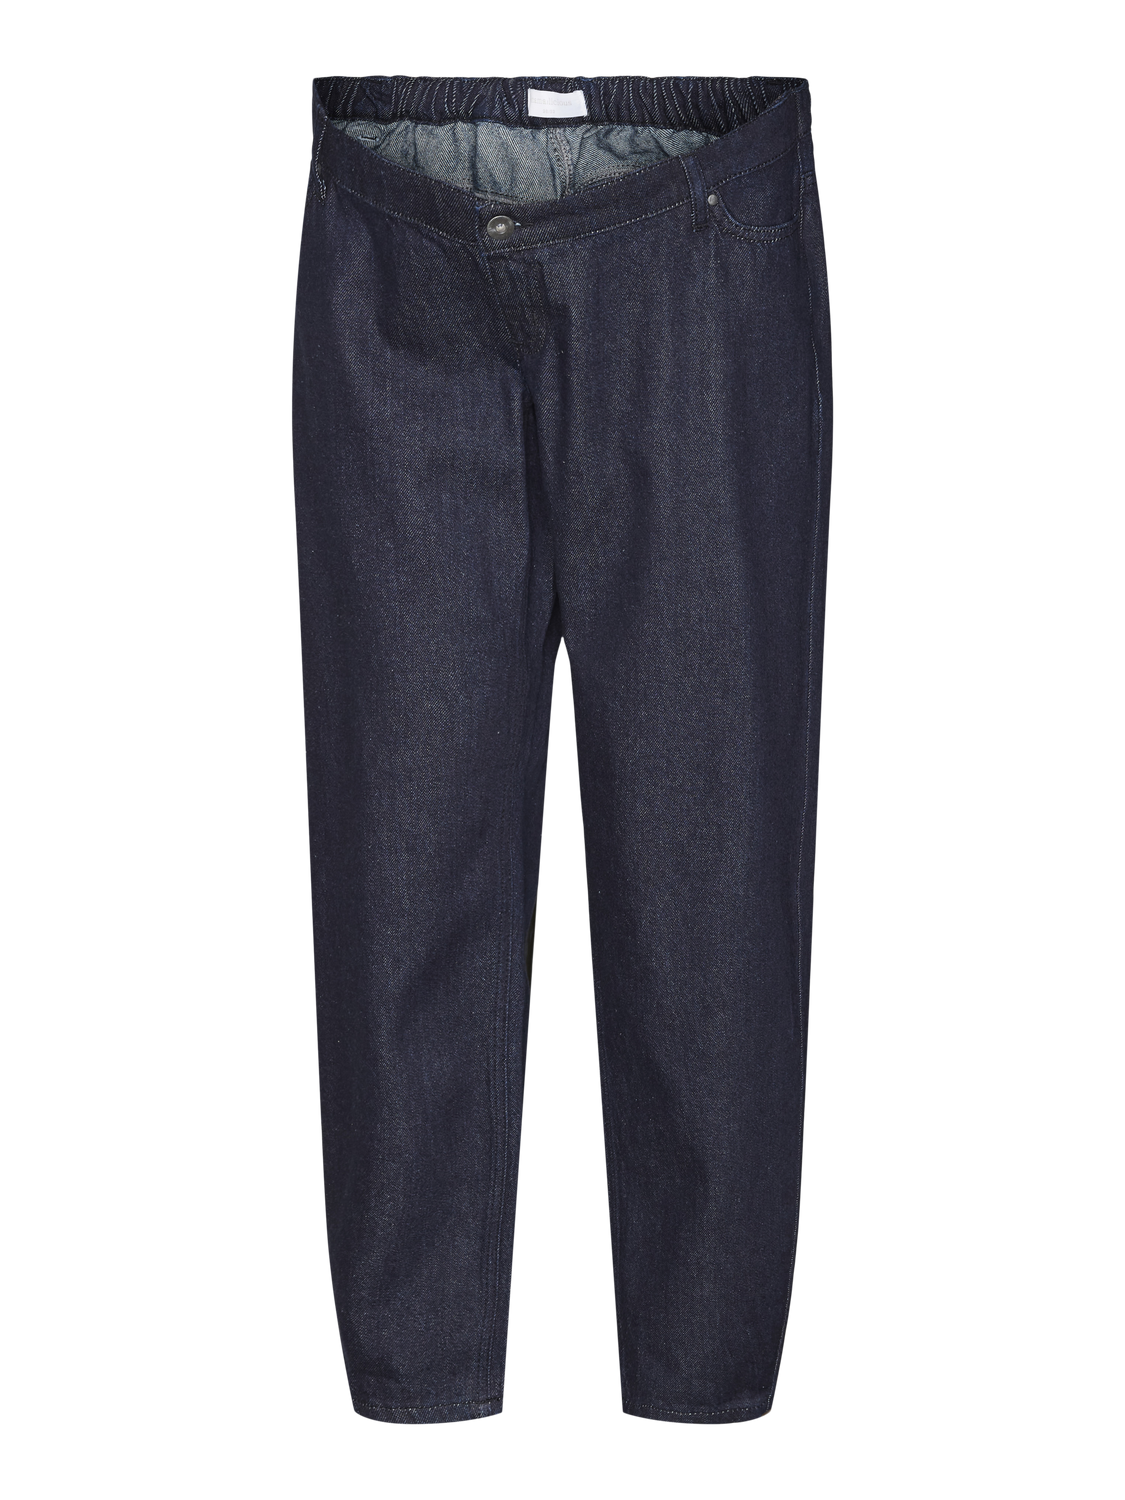 MAMA.LICIOUS Krój baryłkowaty Niska talia Jeans -Dark Blue Denim - 20020036